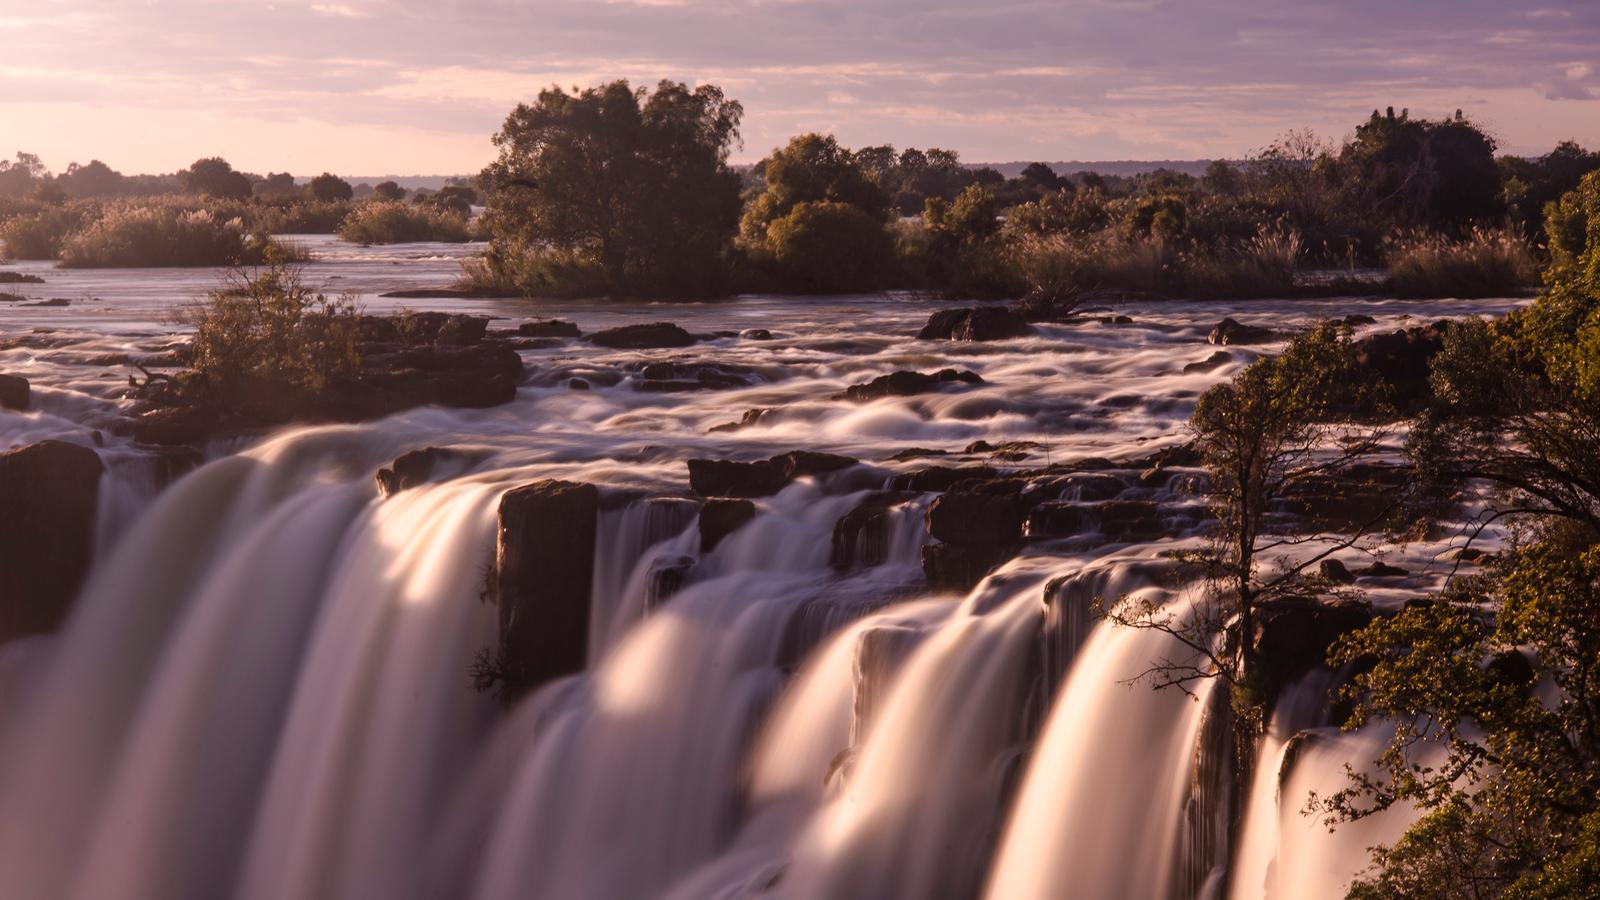 Johannesburg to Nairobi Overland: Waterfalls & Beaches